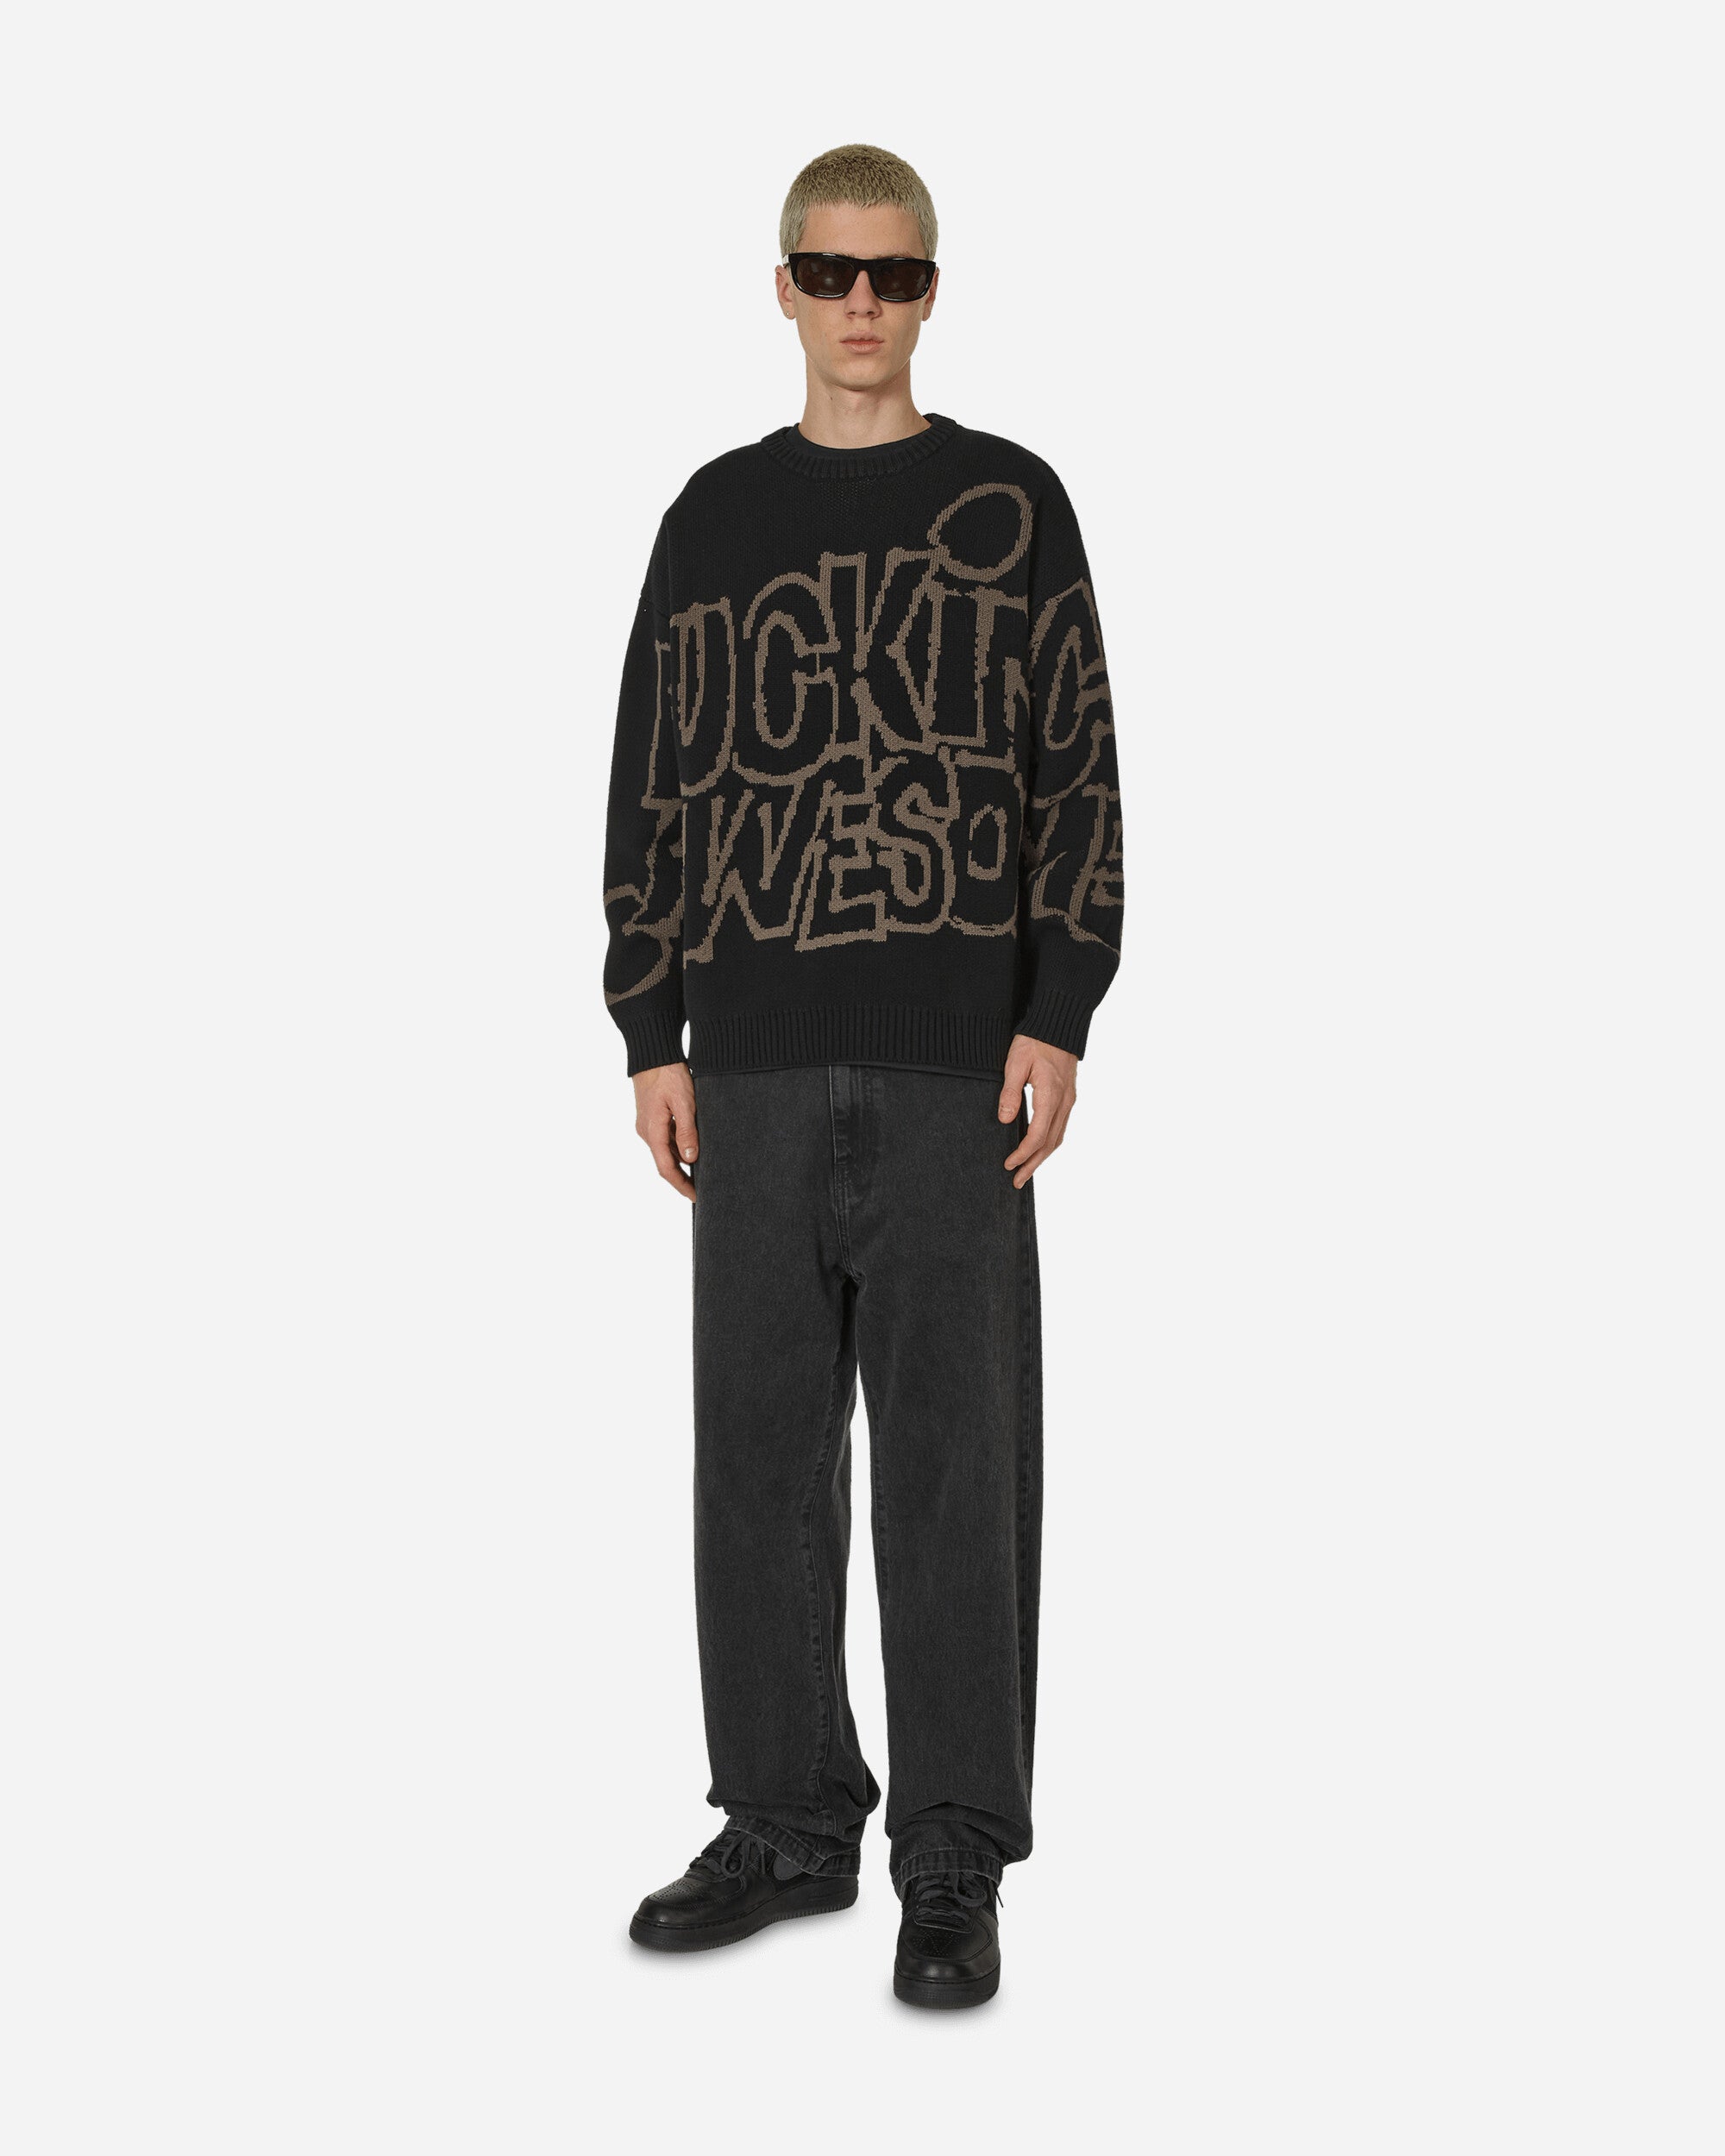 PBS Knit Sweater Black